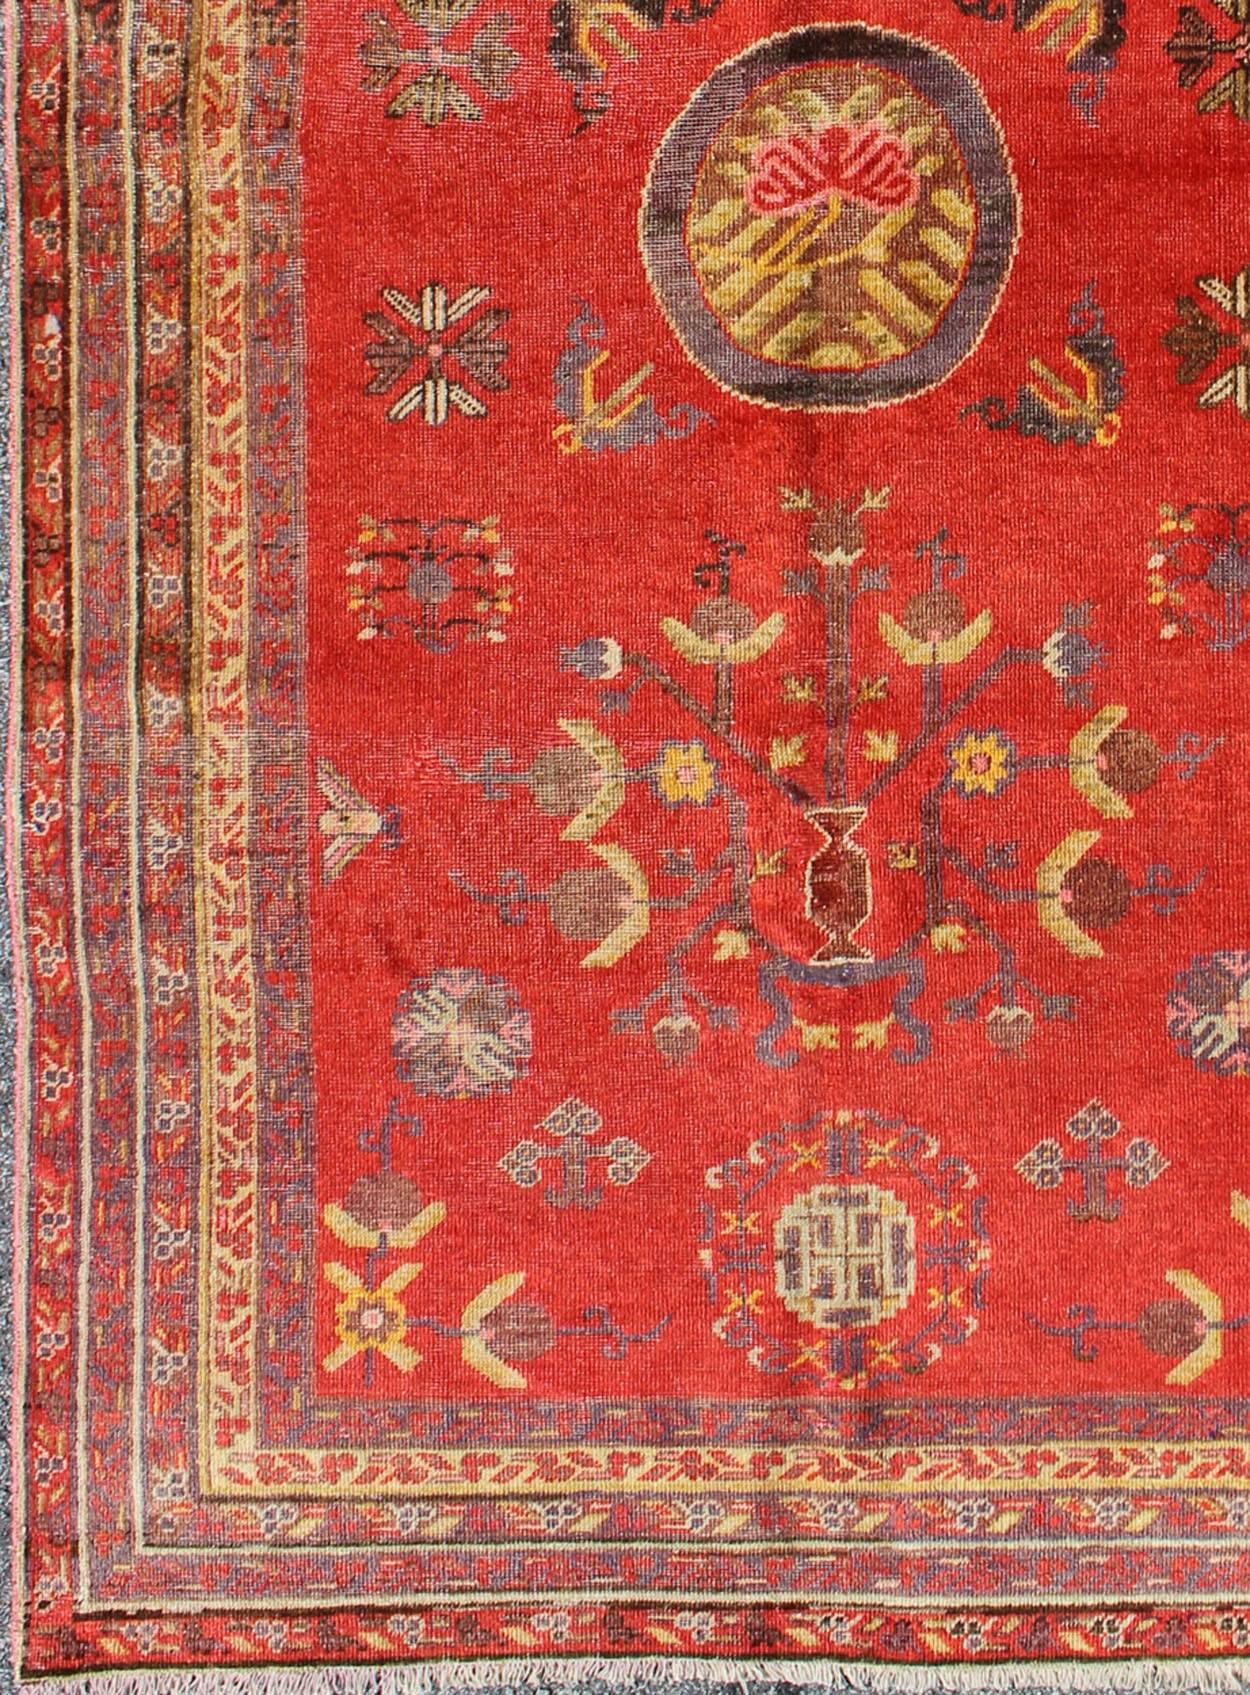 Mesures : 4'1'' x 8'6''.
Cet attrayant tapis antique de Khotan est un témoignage spectaculaire de la complexité du design du Turkestan. Le rouge du champ central accueille un magnifique arbre de vie entrelacé portant des fleurs en bouton et de